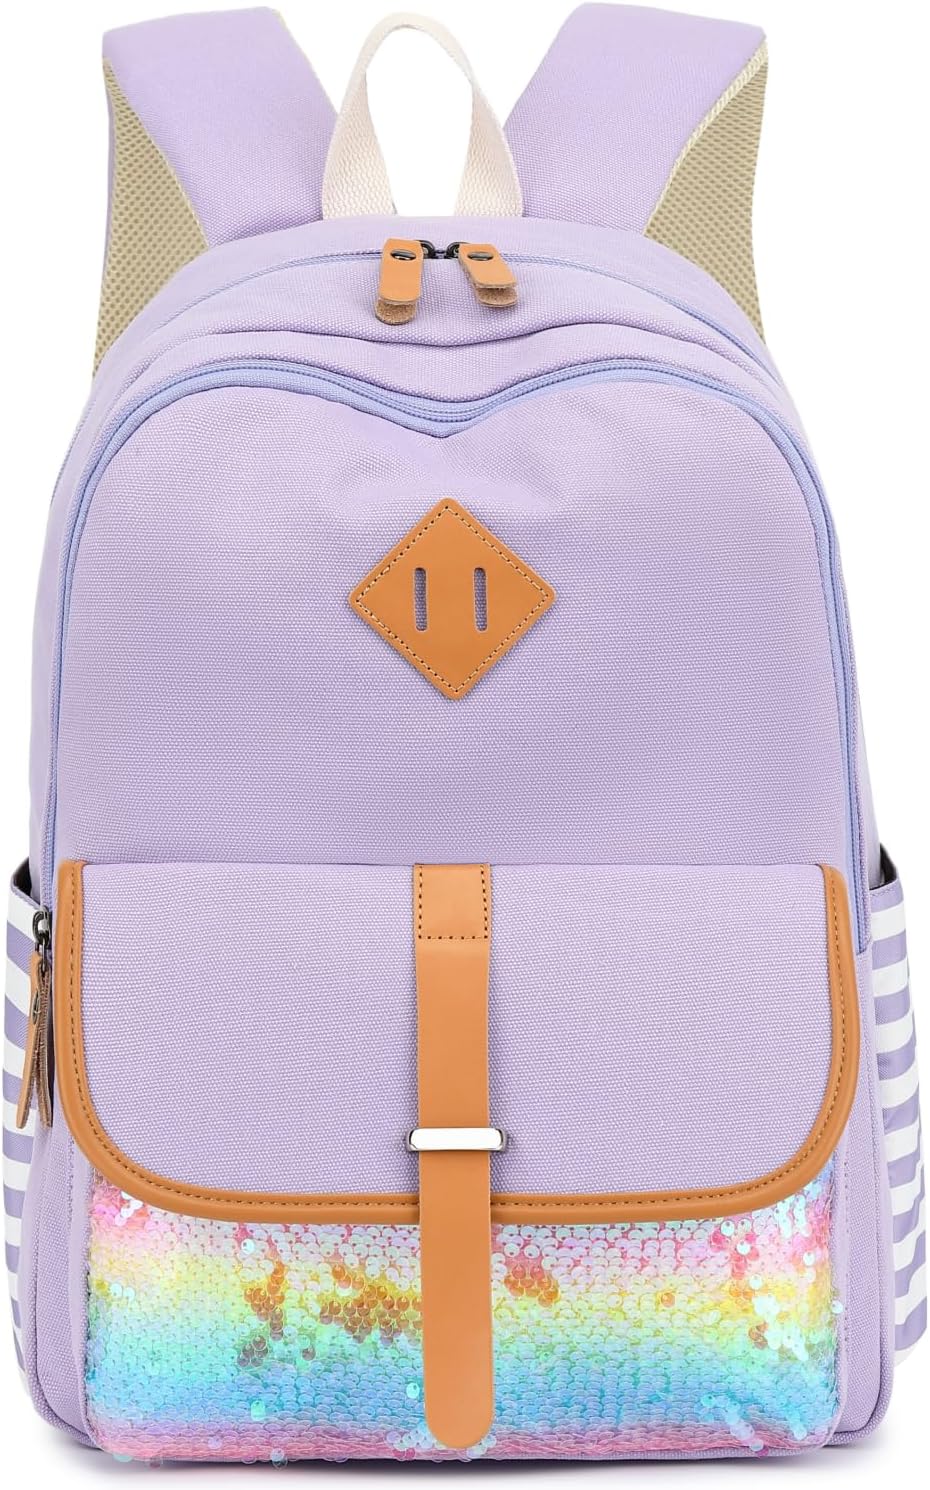 Leaper Canvas School Backpack for Girls Laptop Bag Travel Bag Bookbag Daypack